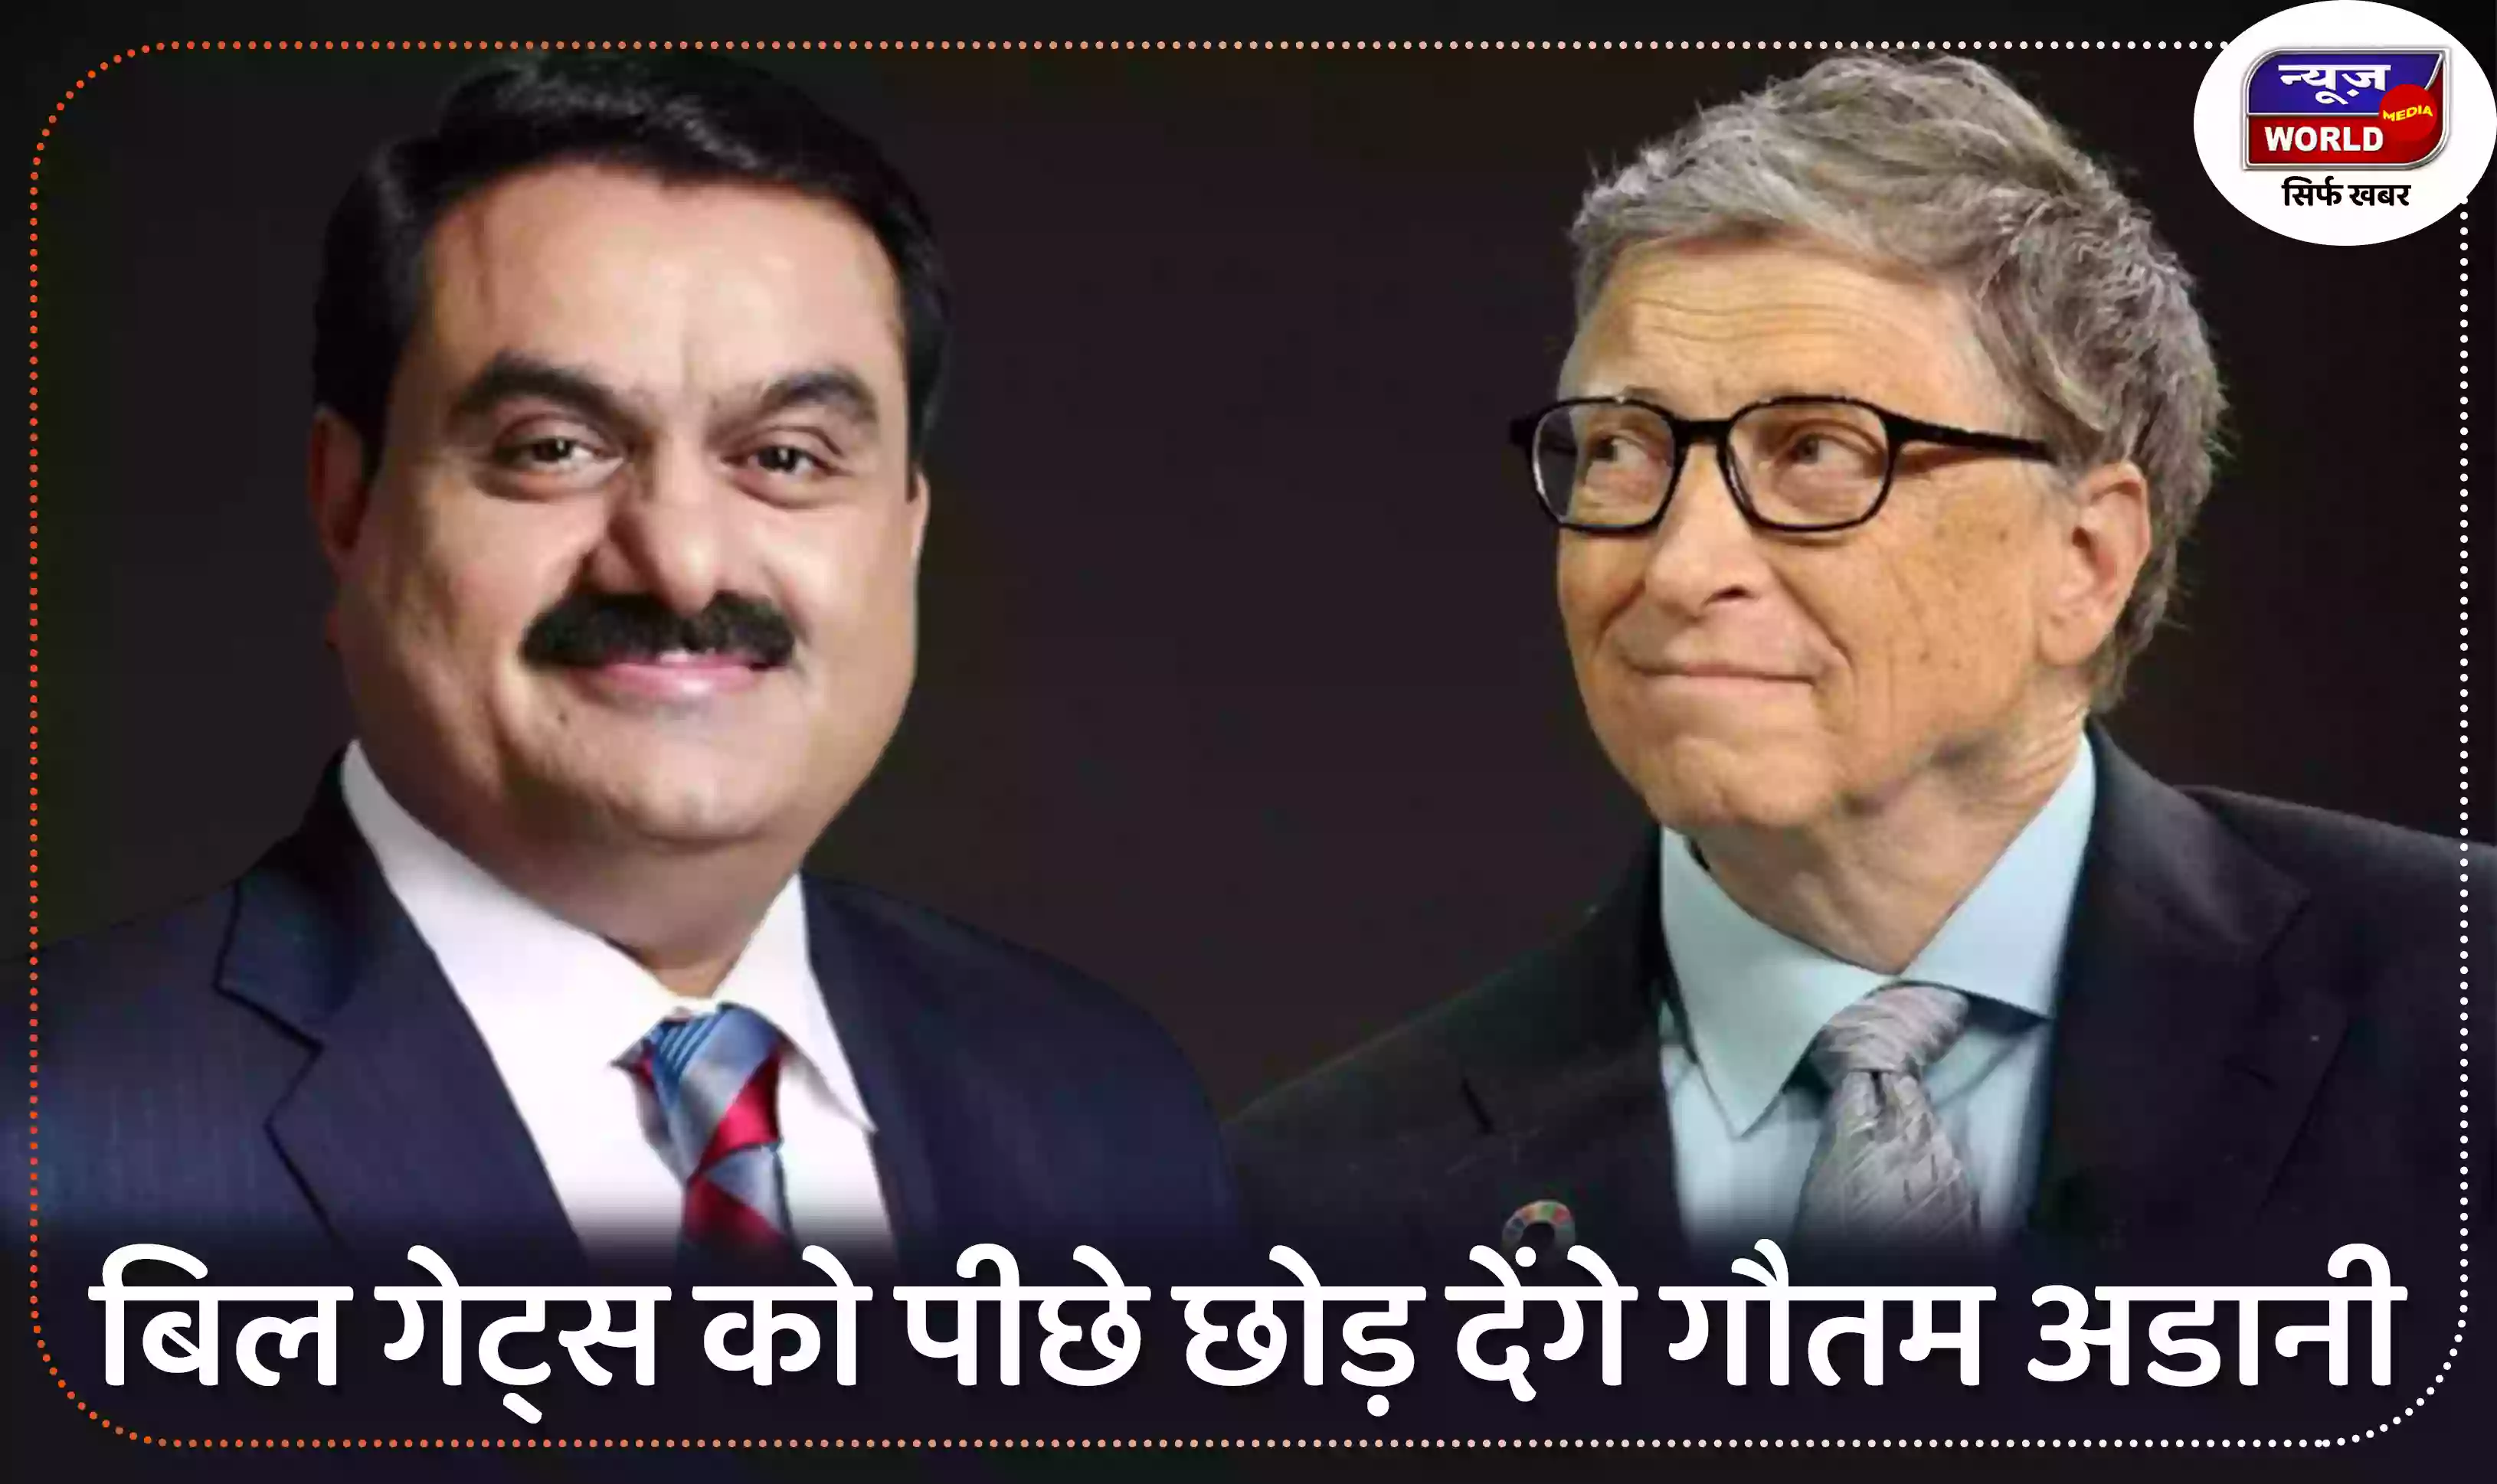 बिल गेट्स को पीछे छोड़ देंगे गौतम अडानी, मुकेश अंबानी दुनिया के 10 शीर्ष अमीरों की सूची से बाहर